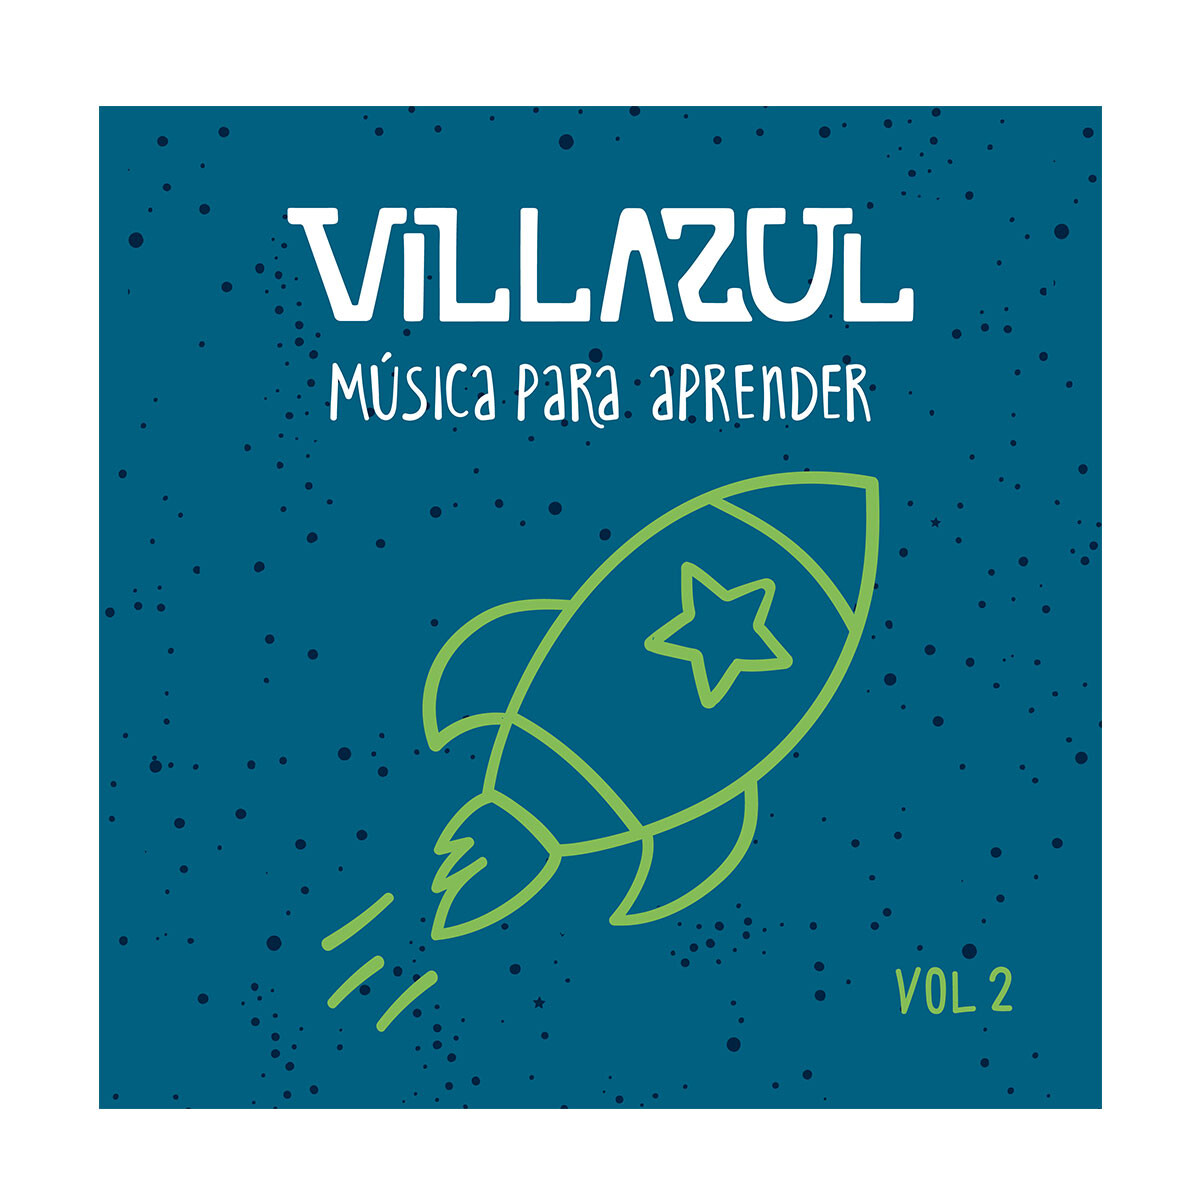 Villazul - Musica Para Aprender Vol 2 - Cd 